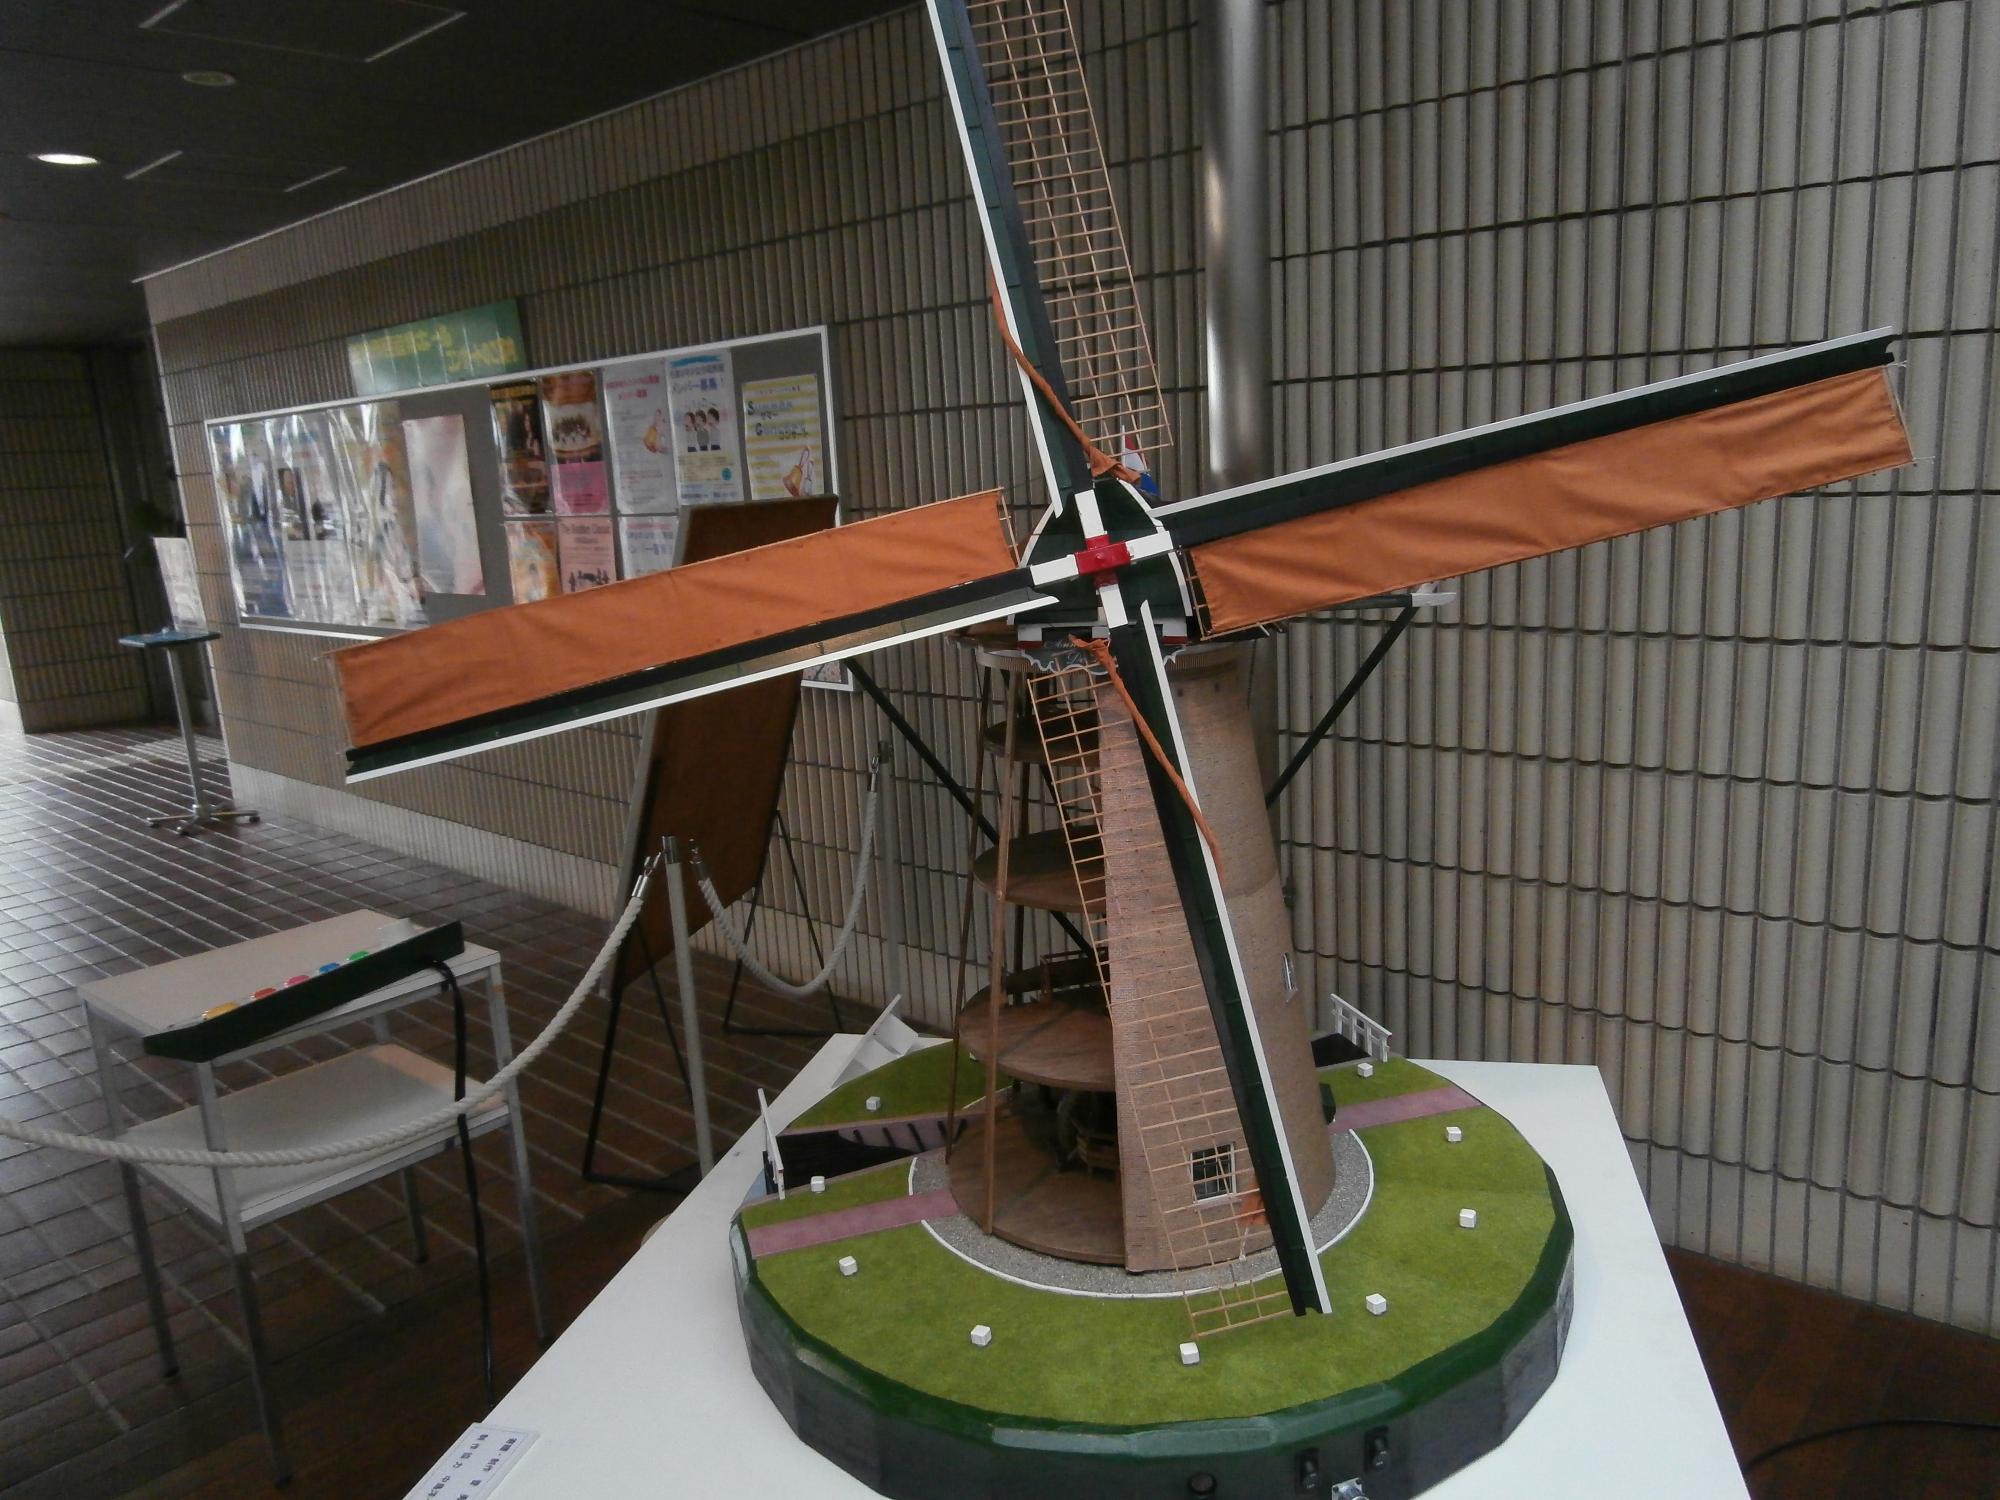 十字に羽がついており、風車内の様子が分かるようになっている忠実に再現したオランダ風車「デ・リーフデ」模型の写真